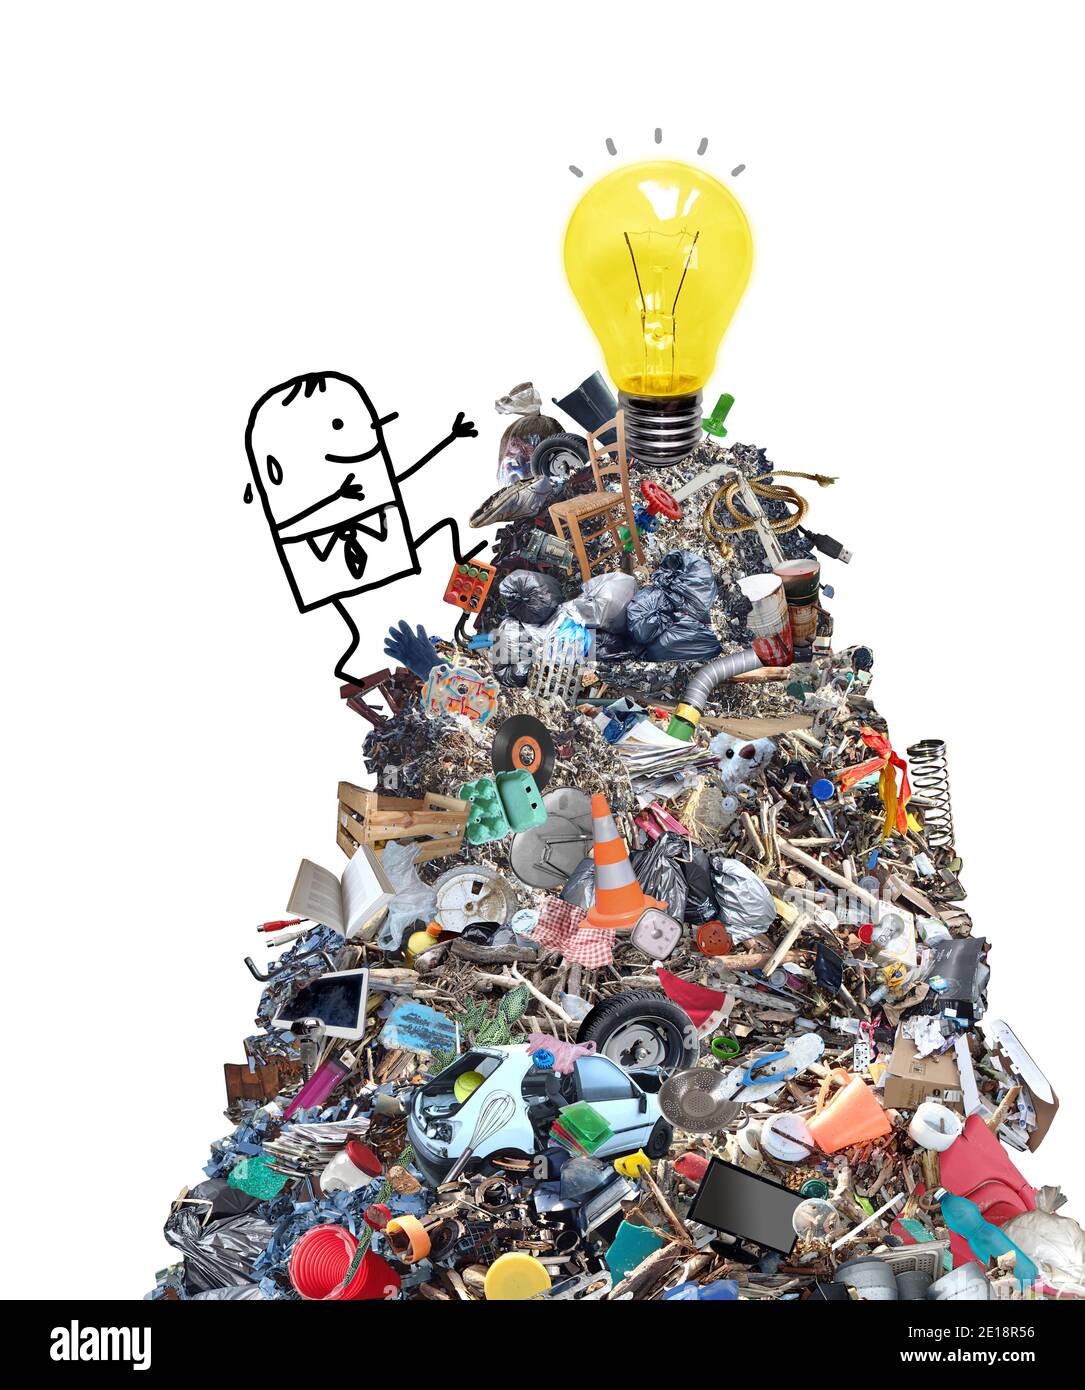 Hand gezeichnet Cartoon man Klettern einen großen Haufen von Garbage glücklich, eine gelbe Glühbirne zu sehen - Collage Stockfoto